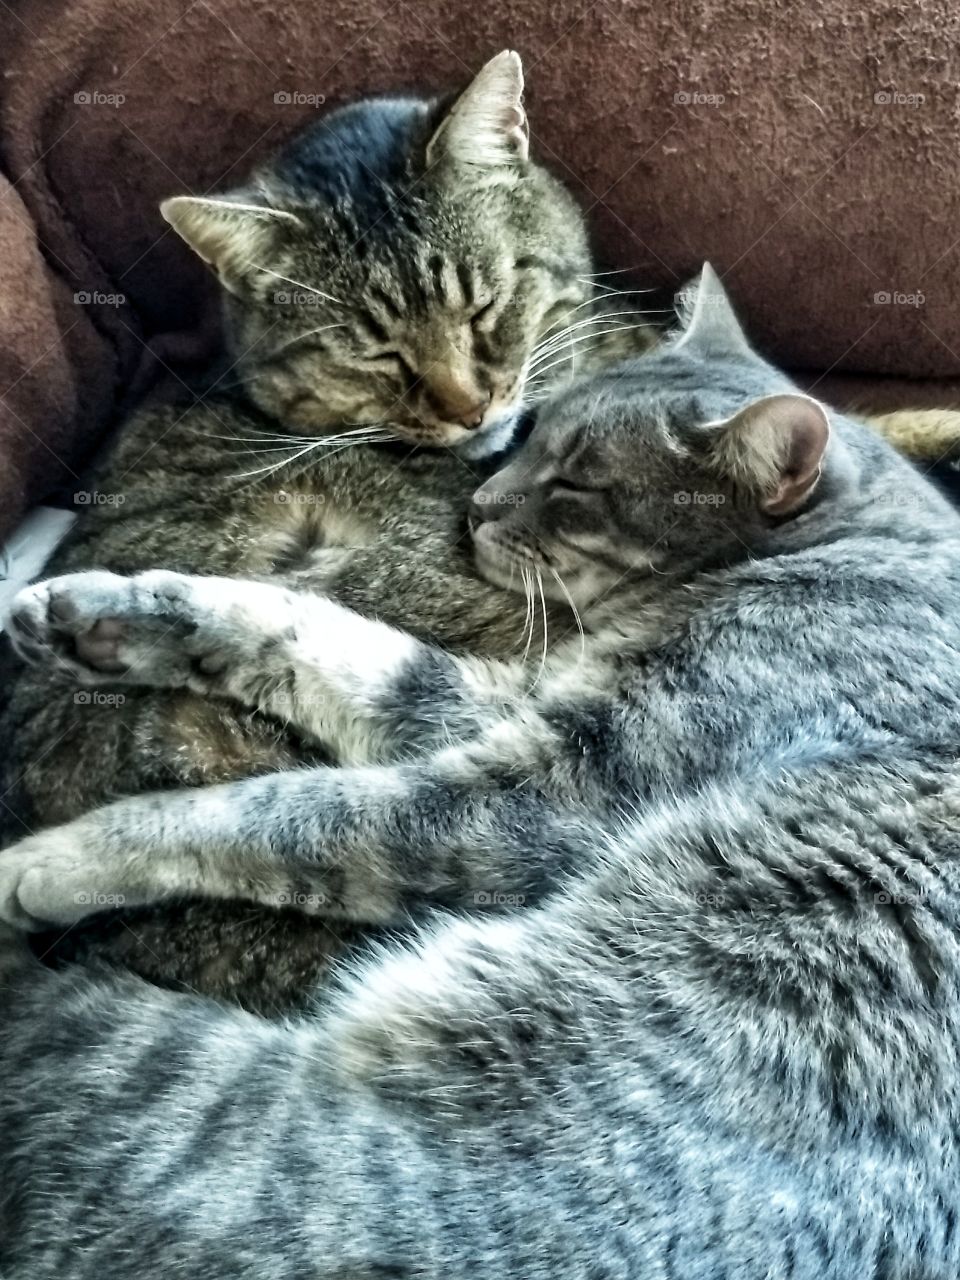 Kitty cuddles, best friends